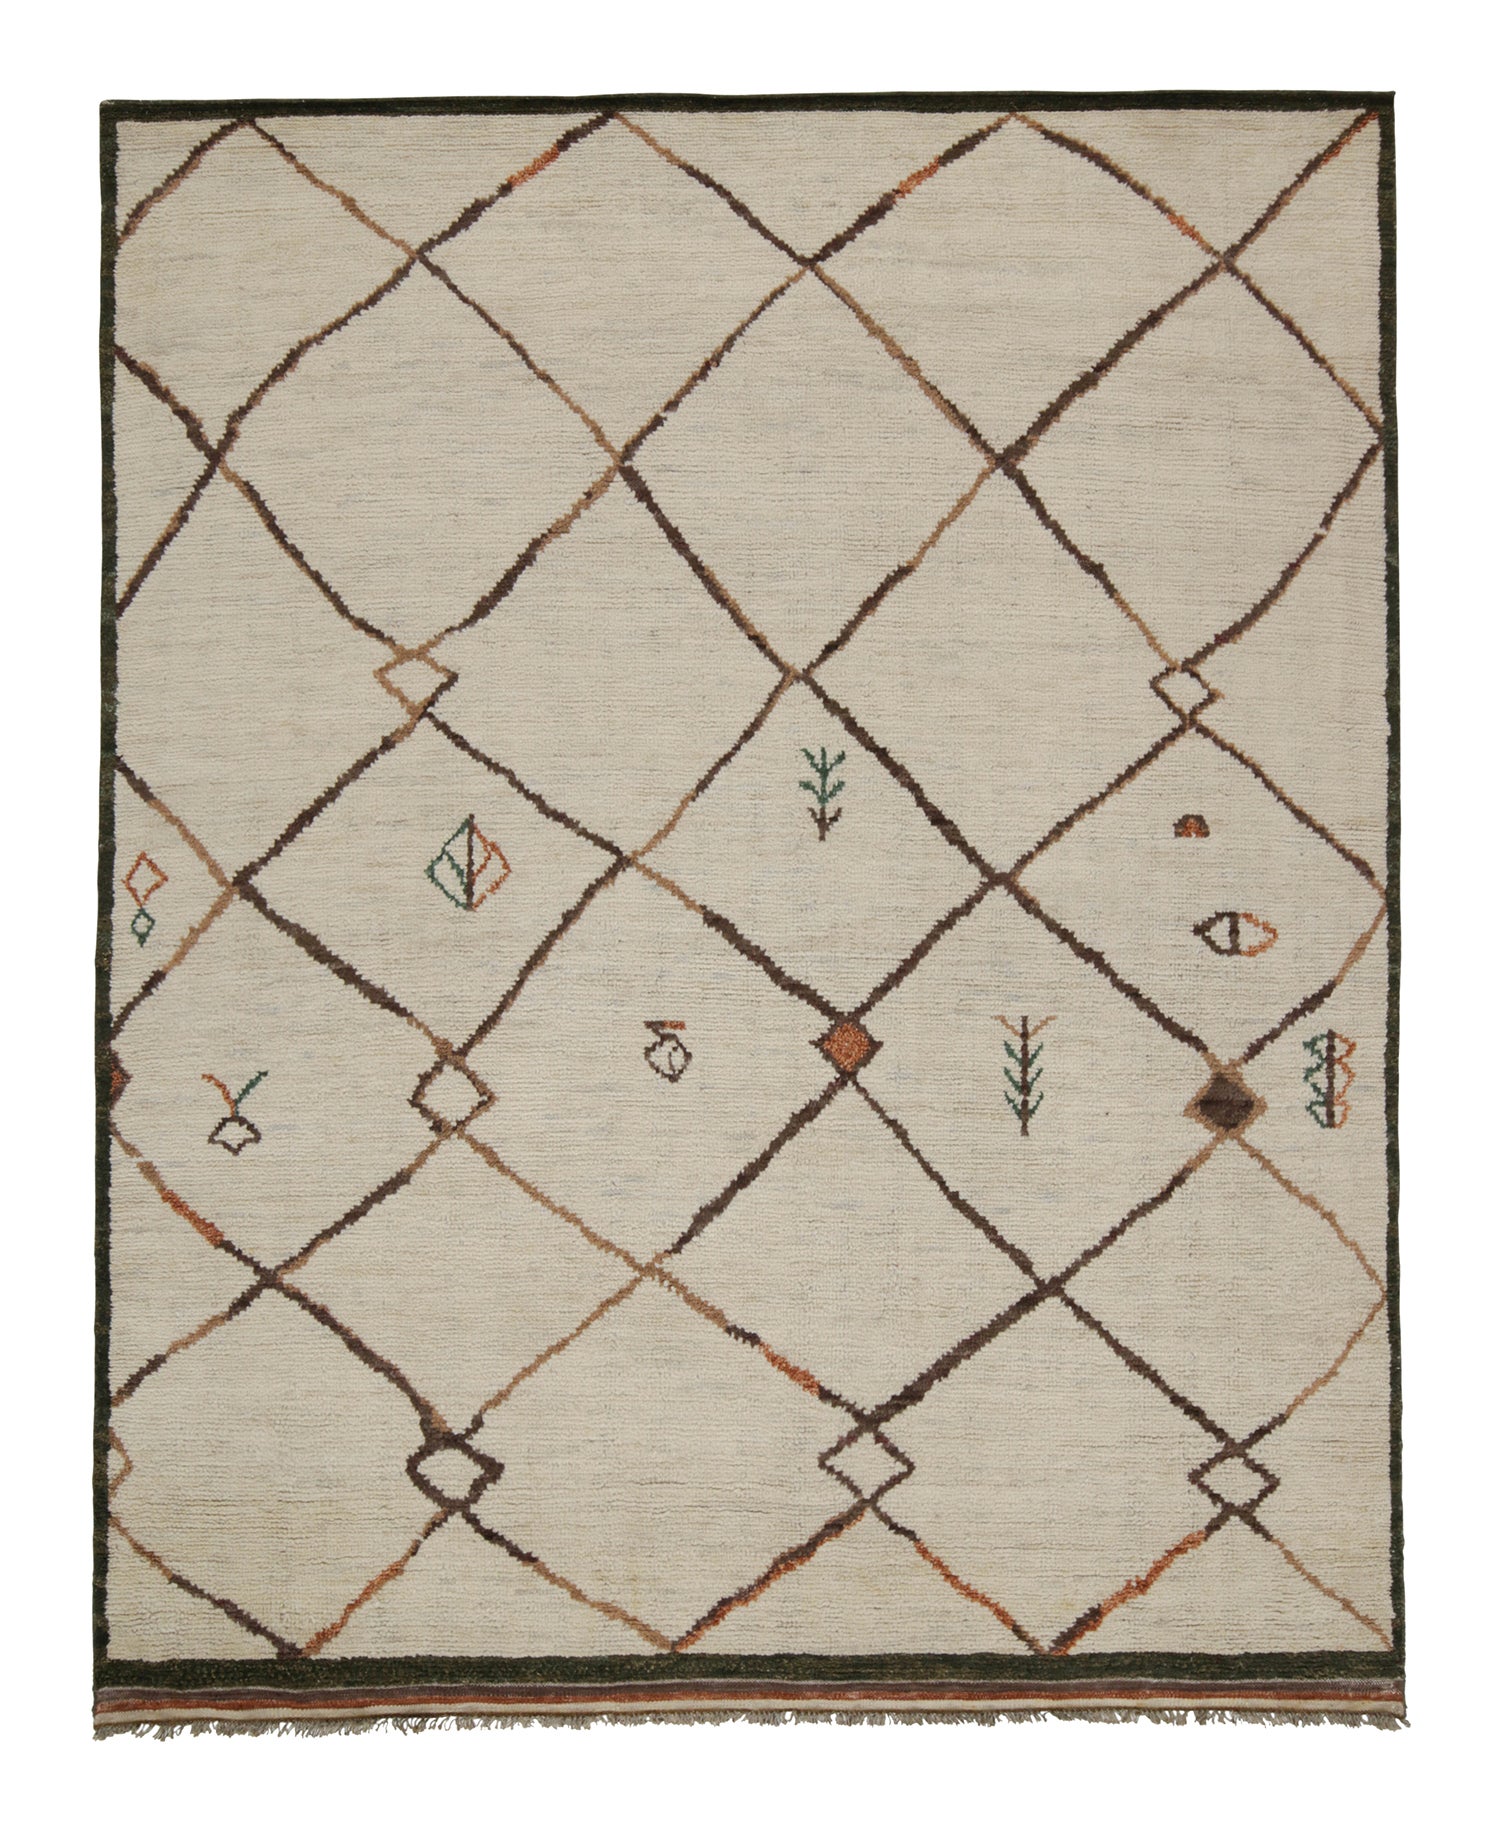 Marokkanischer Teppich und Kelim-Teppich im marokkanischen Stil in Beige mit braunem Gittermuster